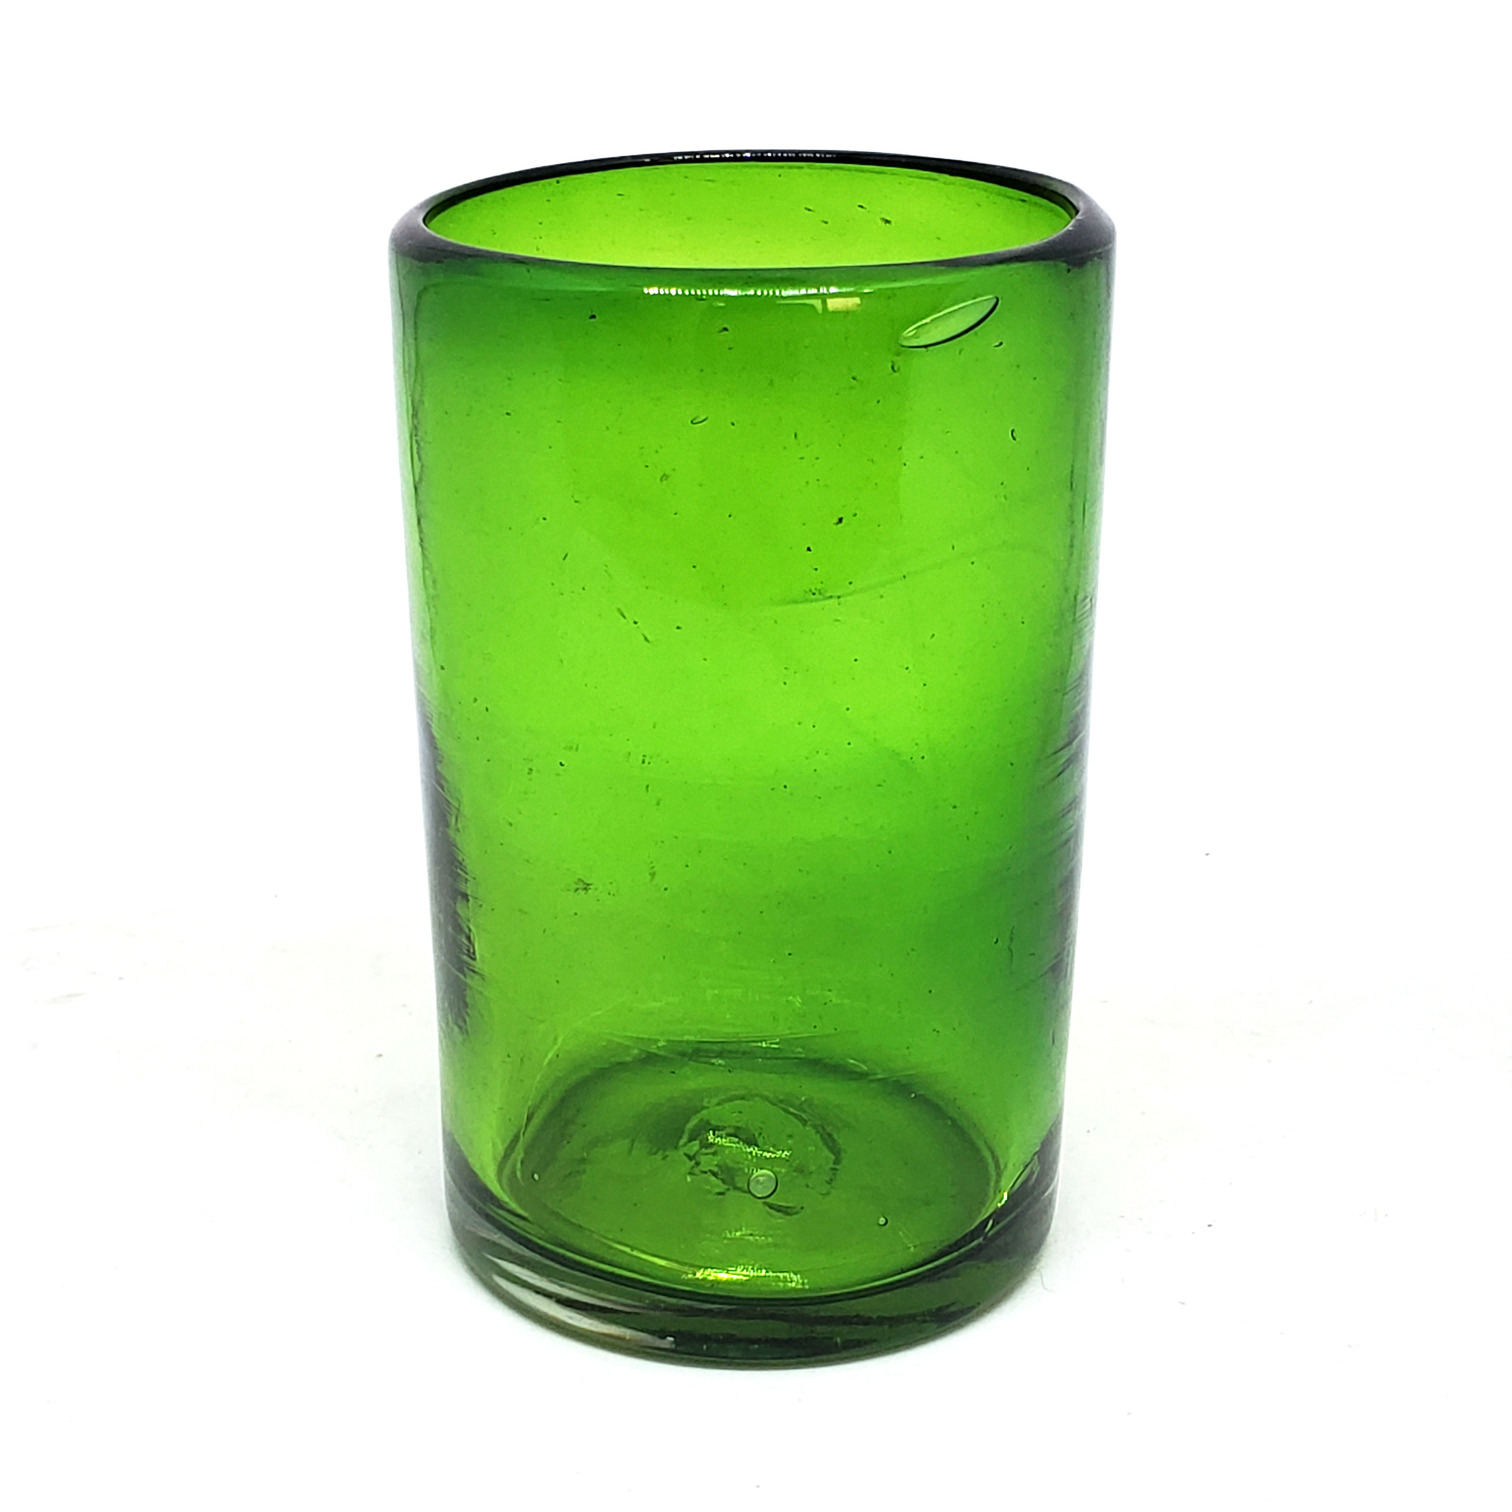 Ofertas / Juego de 6 vasos grandes color verde esmeralda / �stos artesanales vasos le dar�n un toque cl�sico a su bebida favorita.